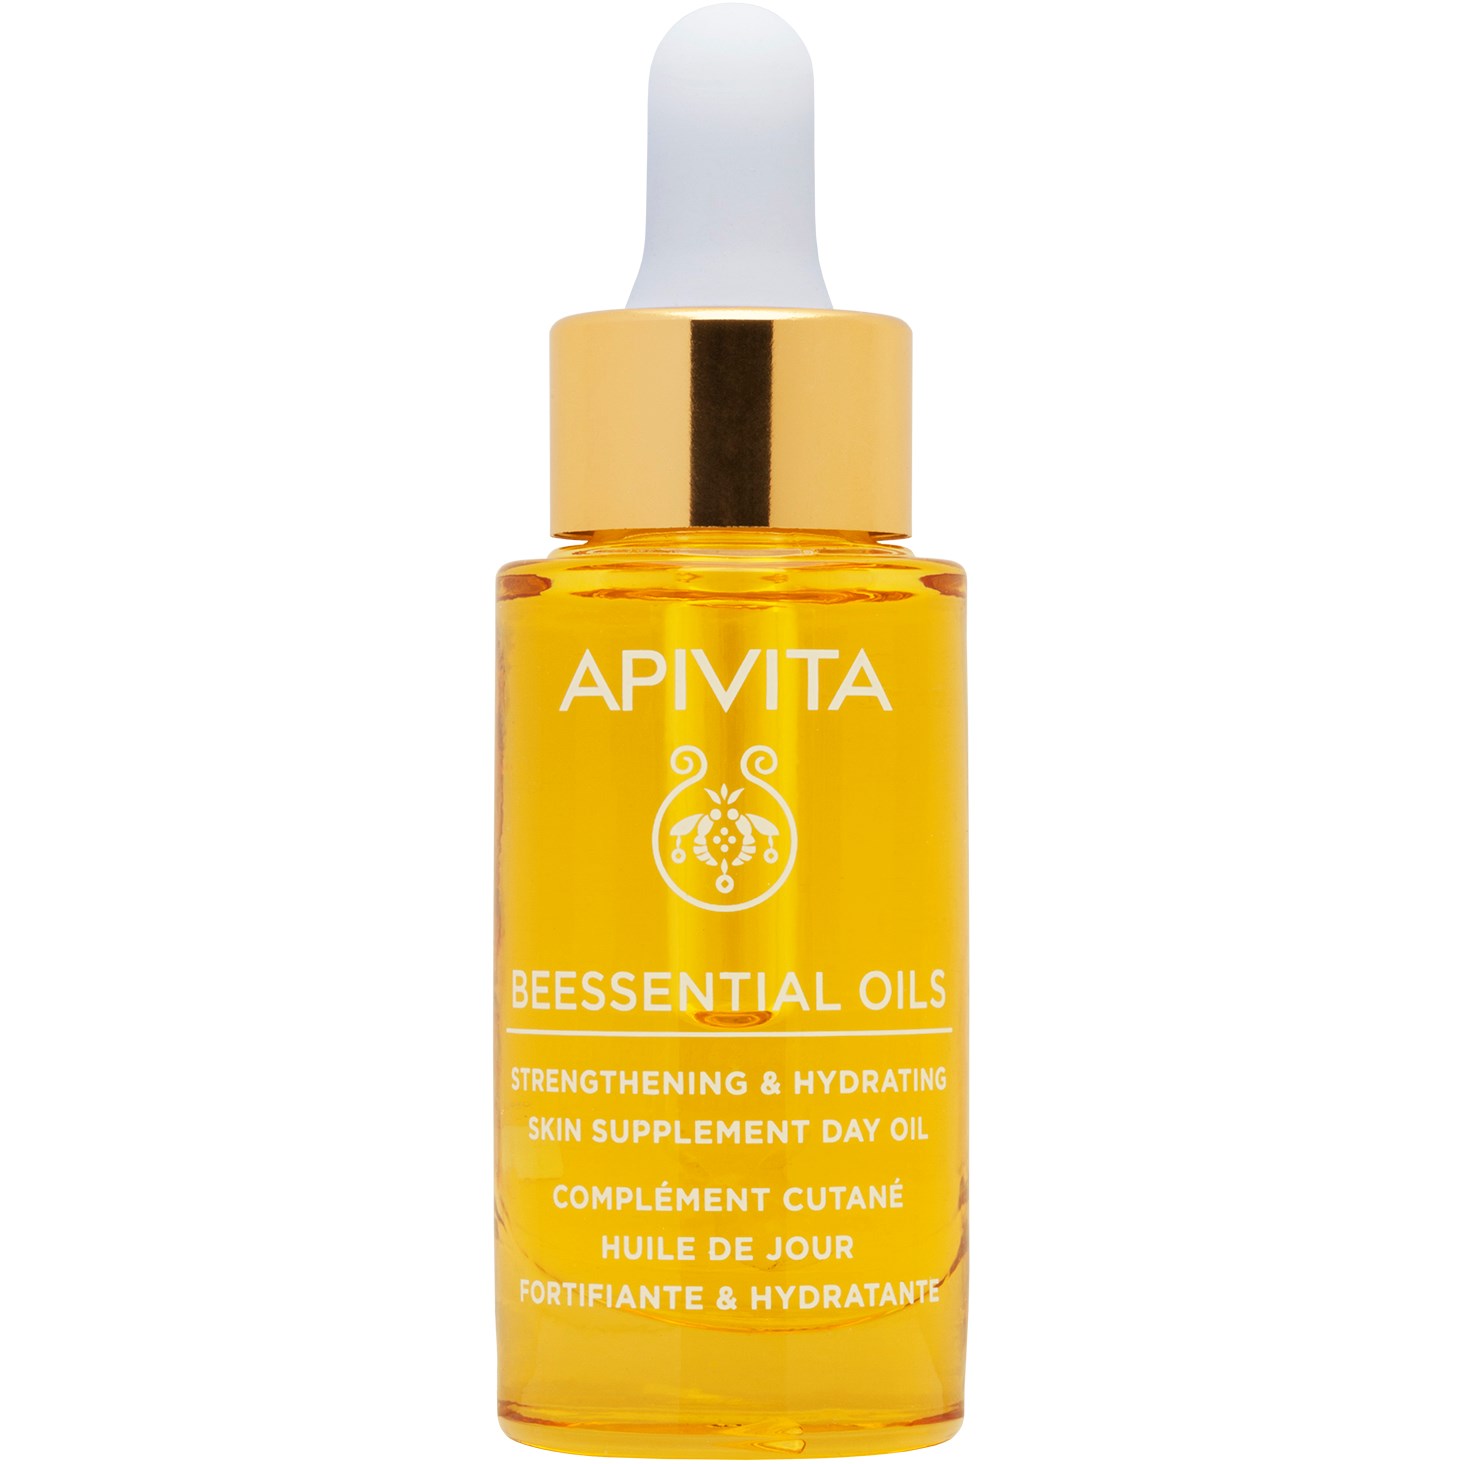 Bilde av Apivita Beessential Oils Strengthening & Hydrating Skin Supplement Day